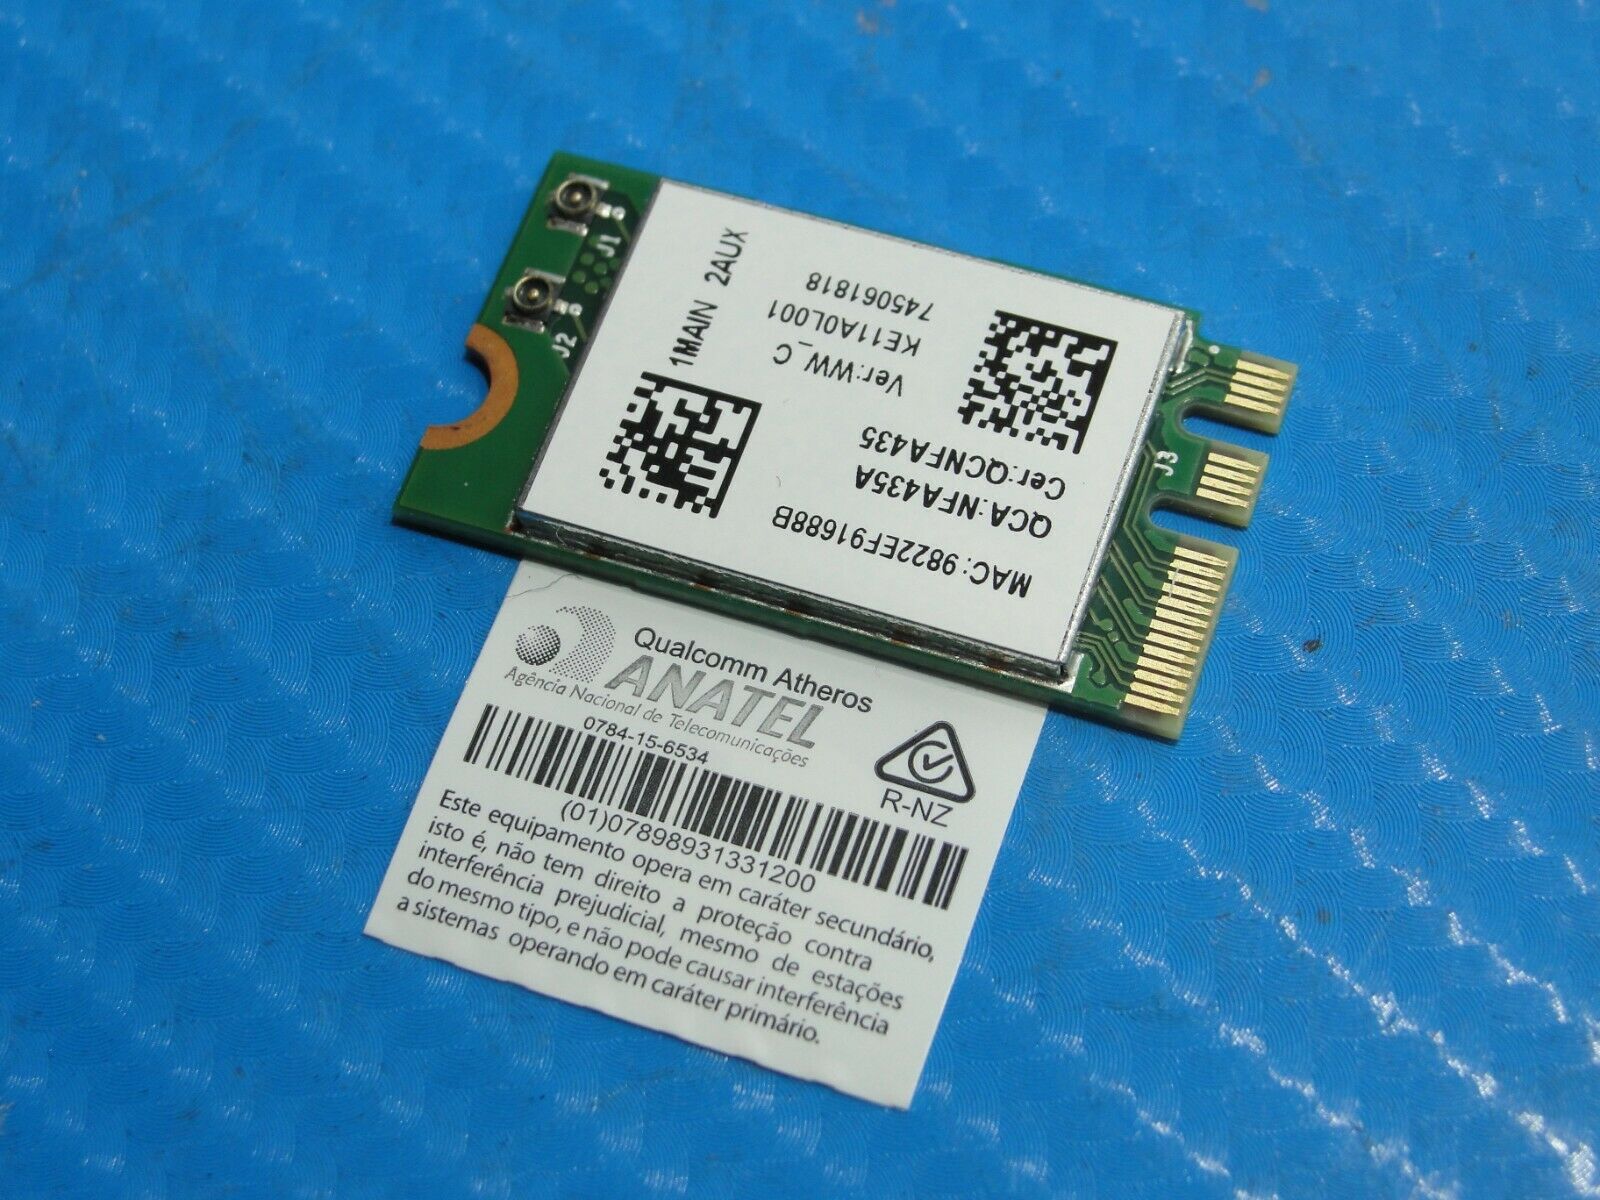 Acer Aspire 3 A315-21-92FX 15.6